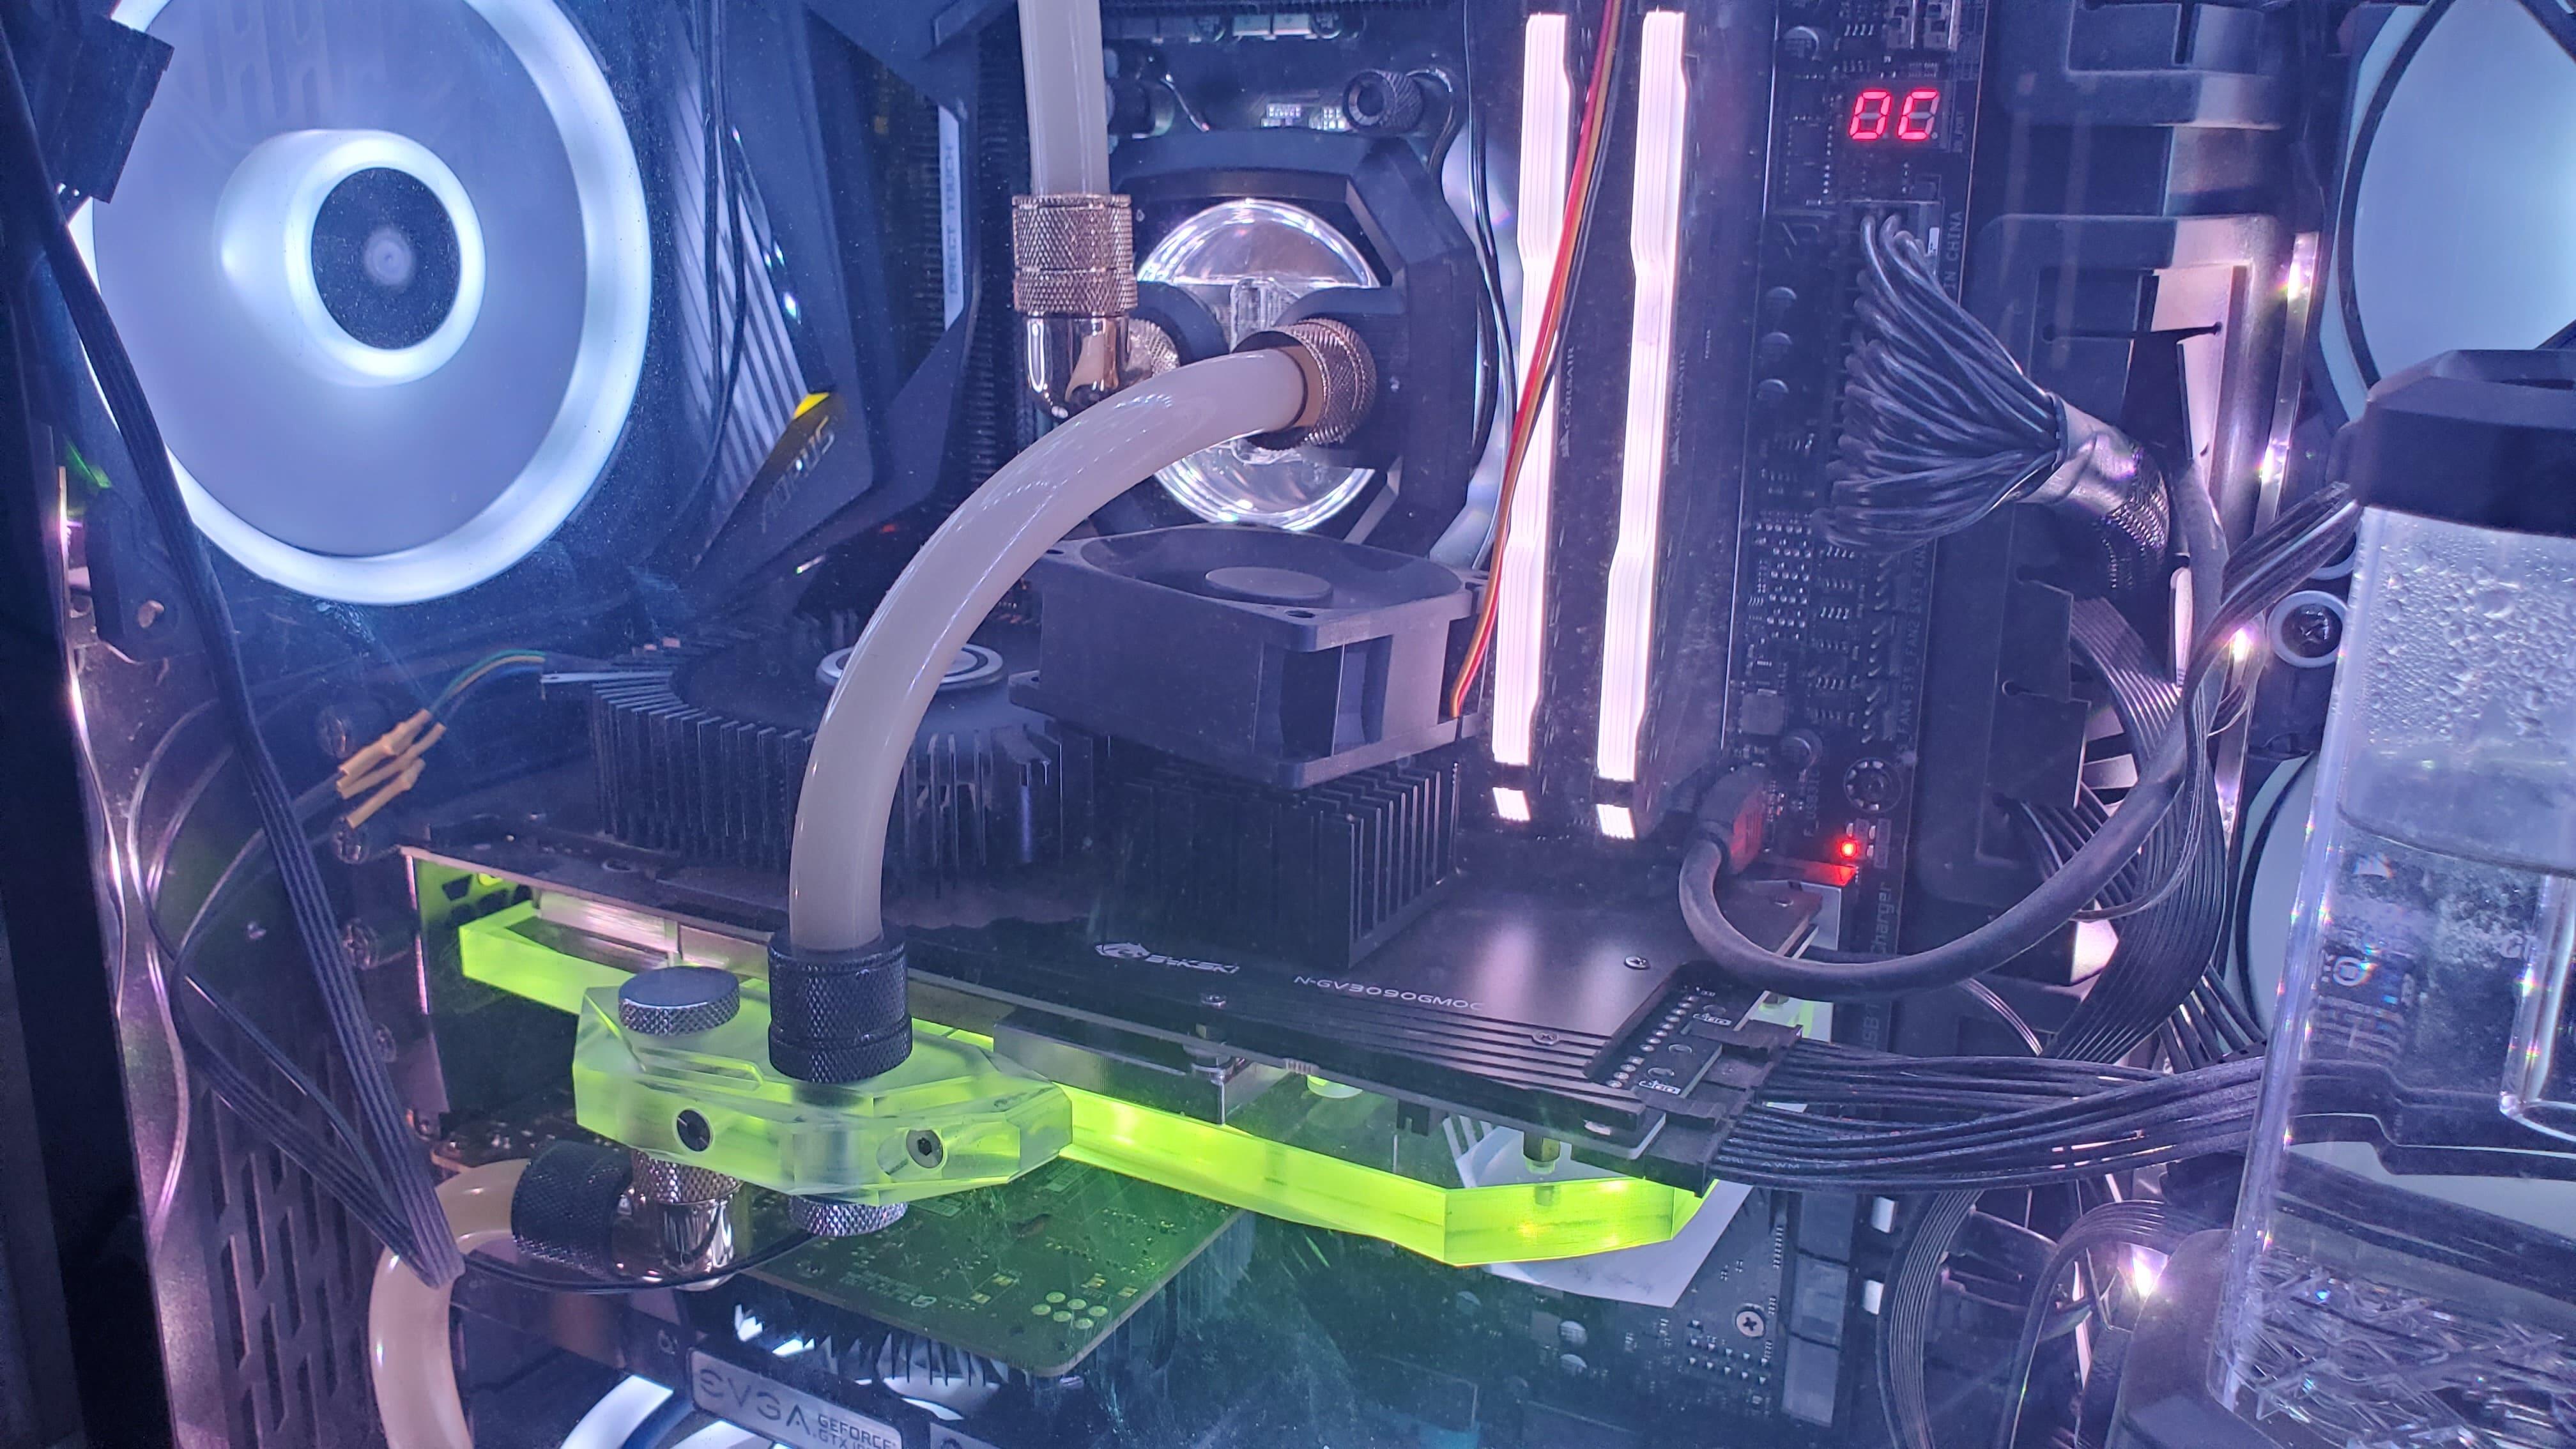 GPU cooling liquid